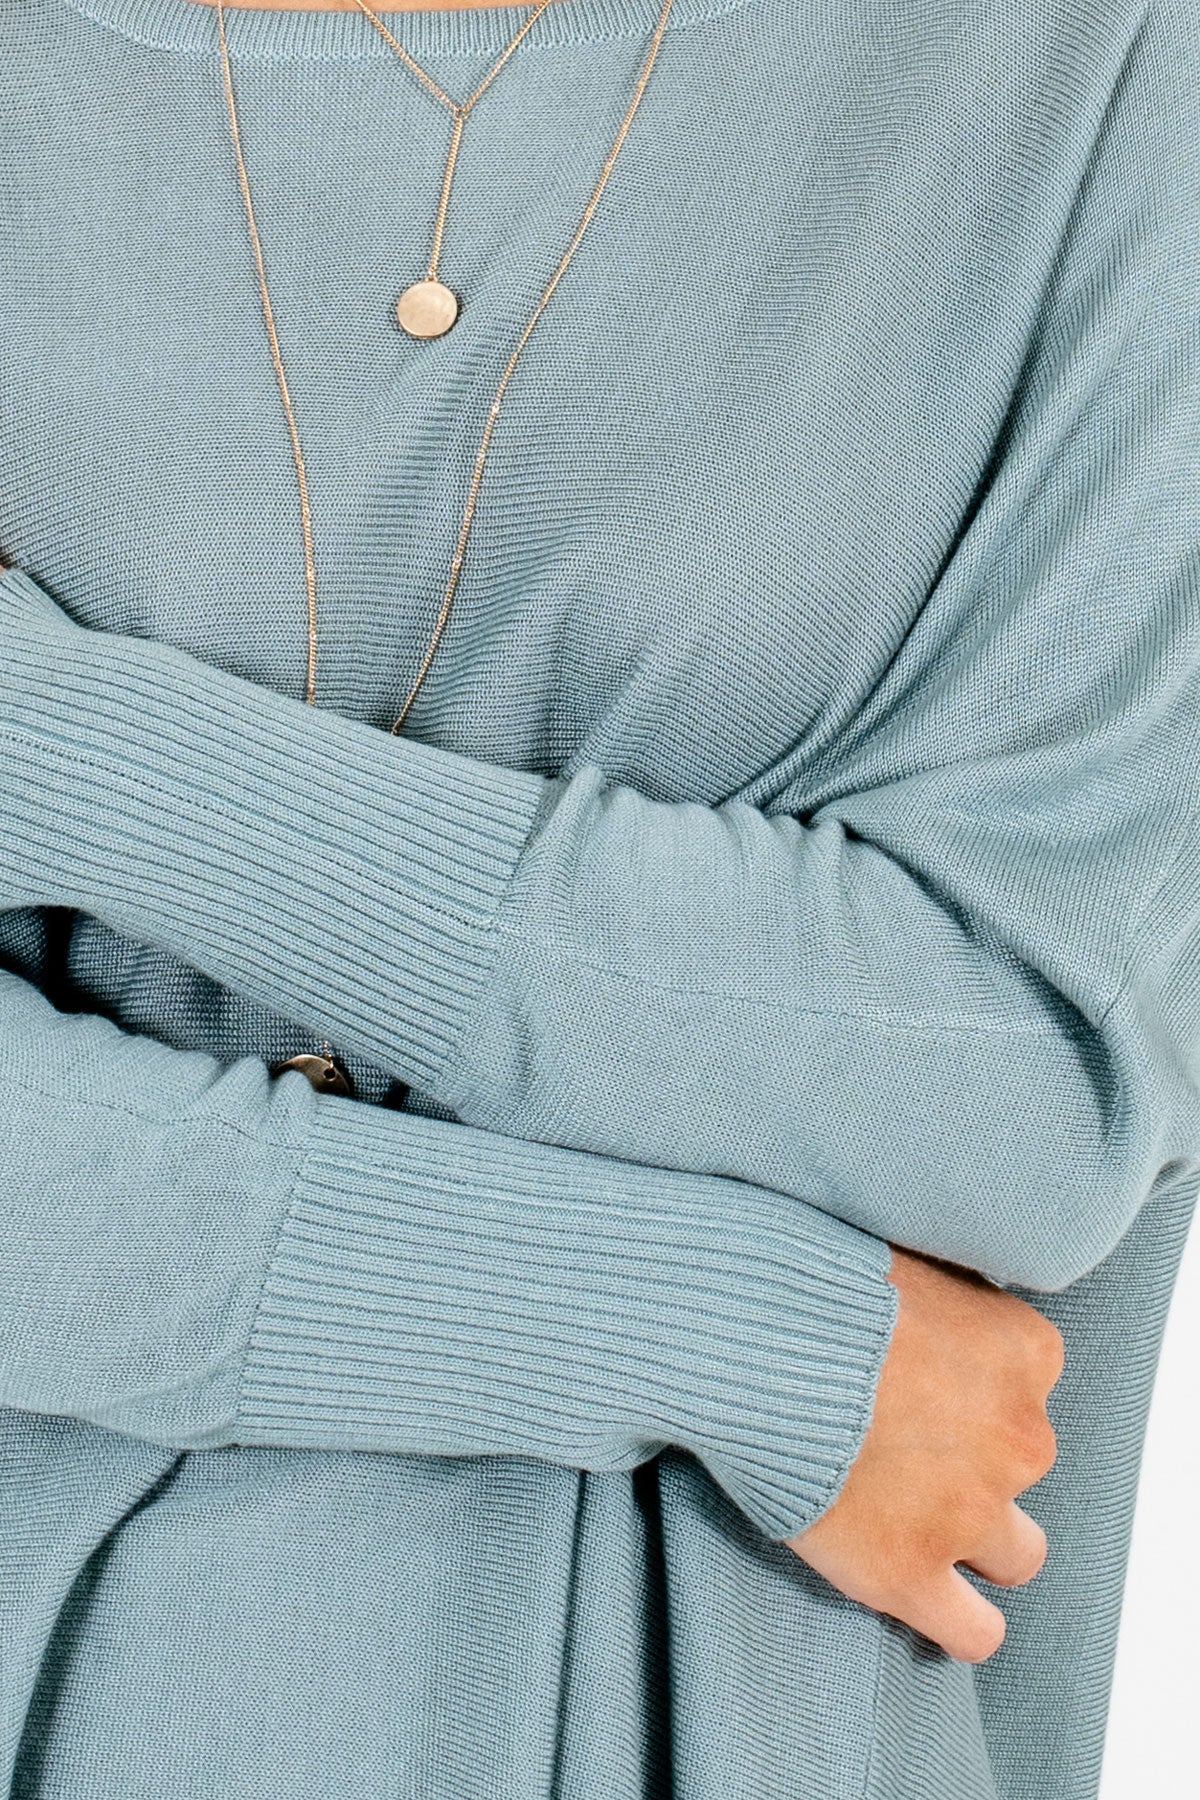 Women's Blue Lightweight Knit Material Boutique Tops